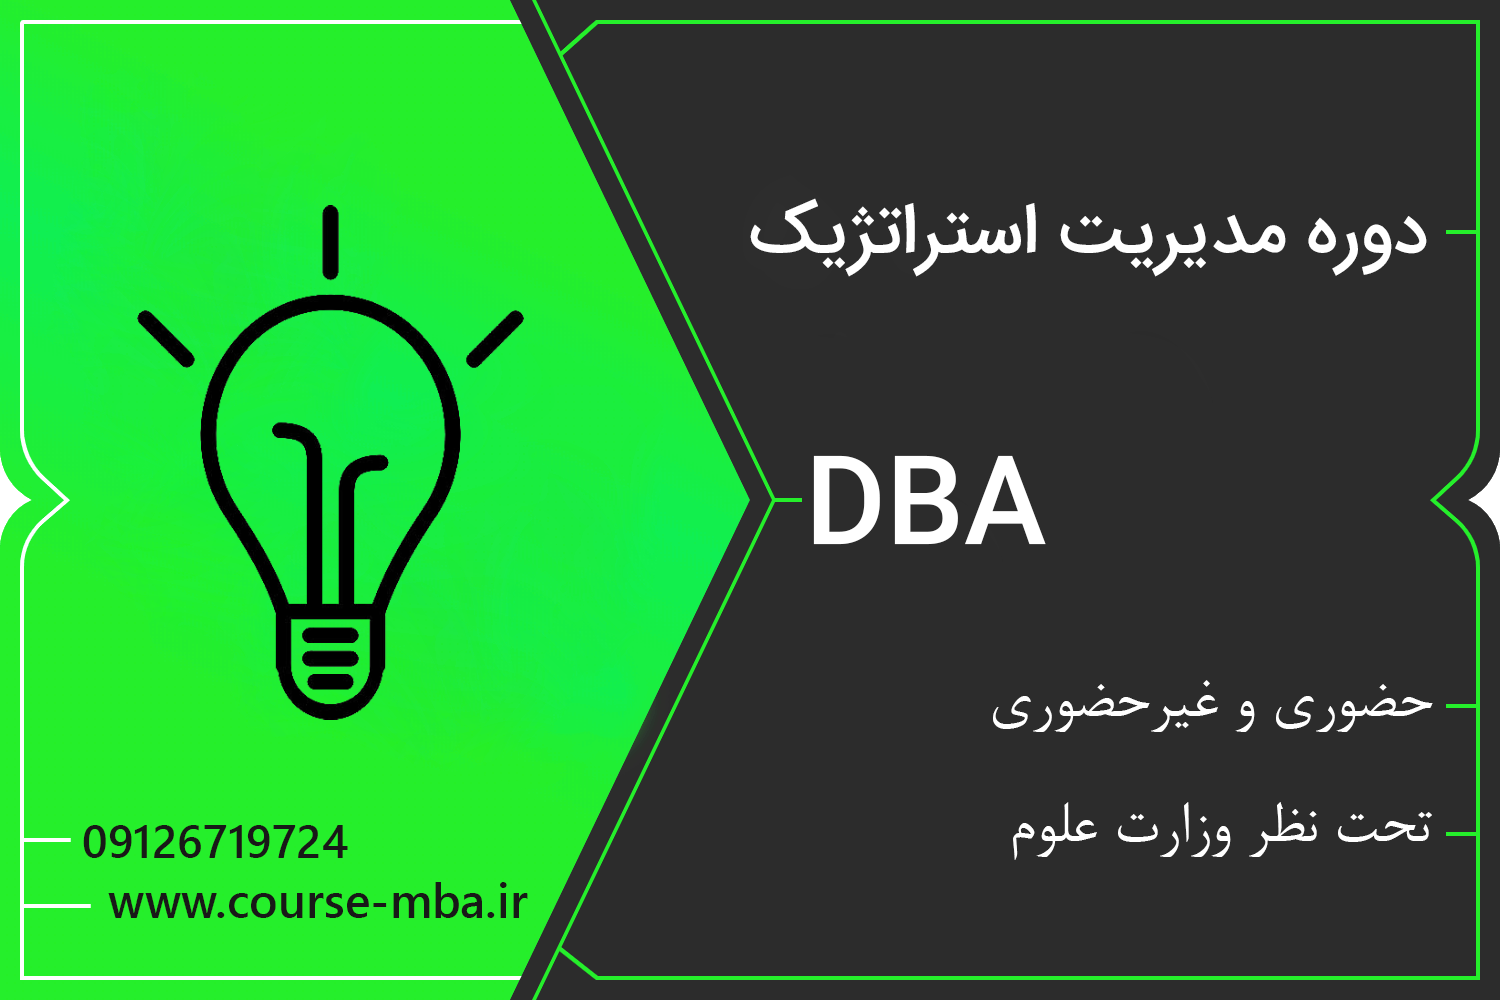 دوره DBA مدیریت استراتژیک | مدرک DBA مدیریت استراتژیک